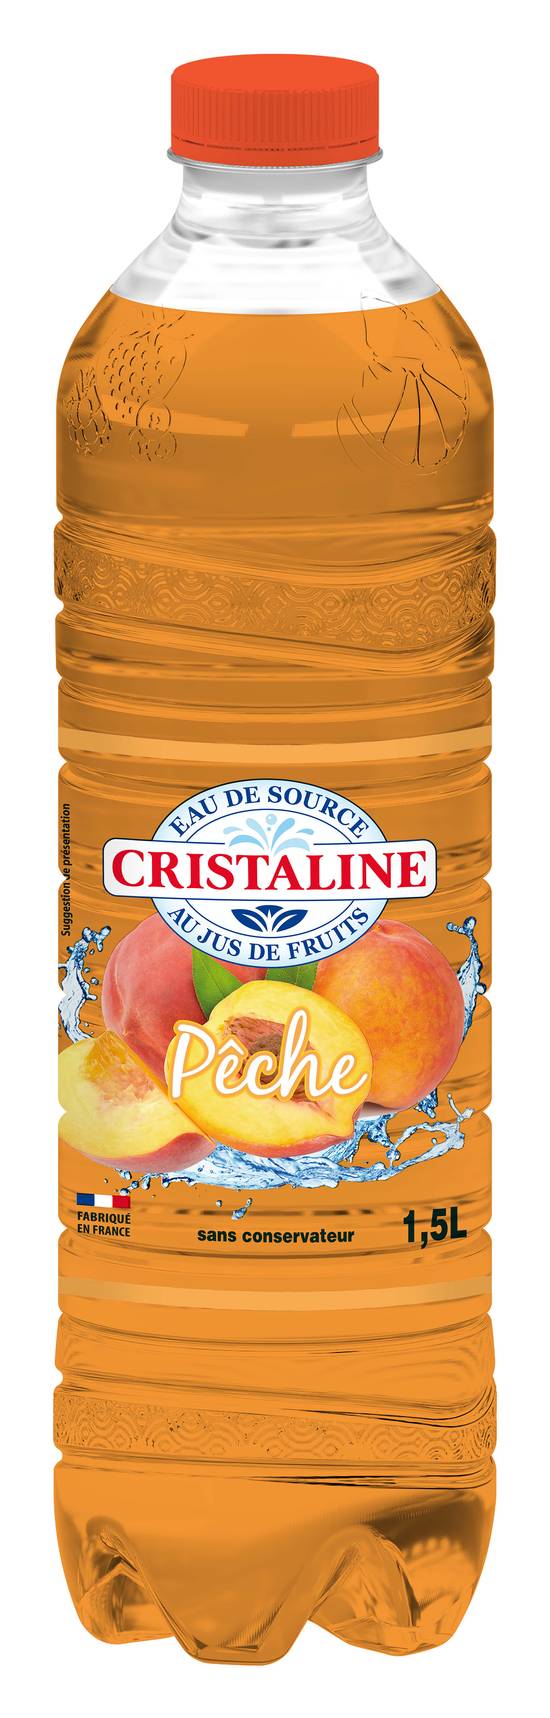 Cristaline - Eau de source (1.5 L) (pêche )